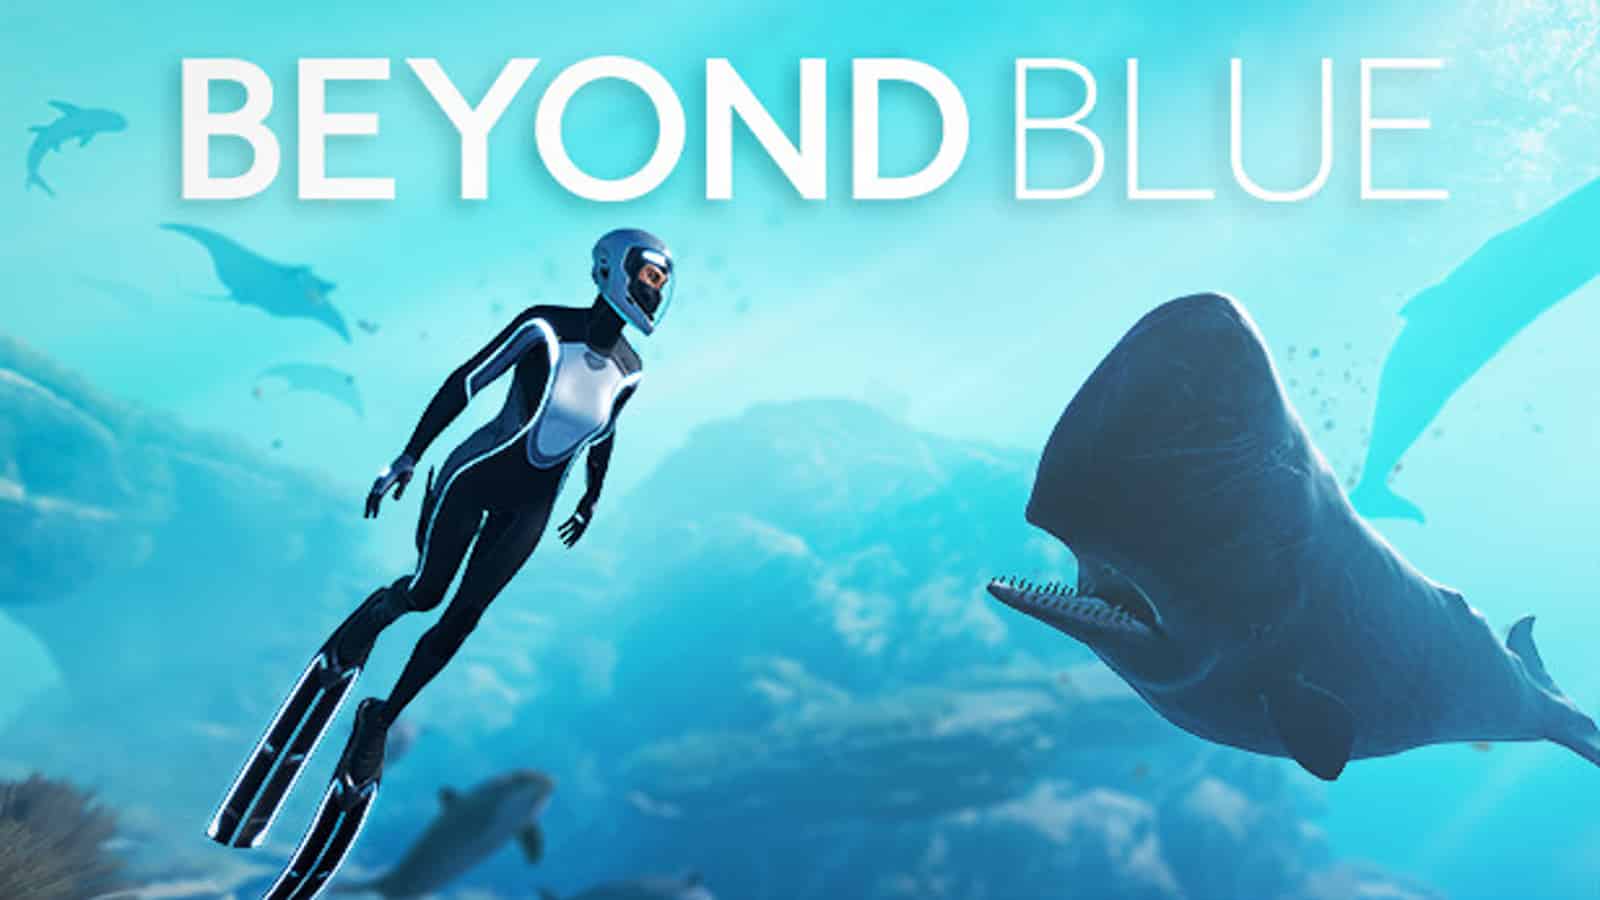 Beyond blue banner